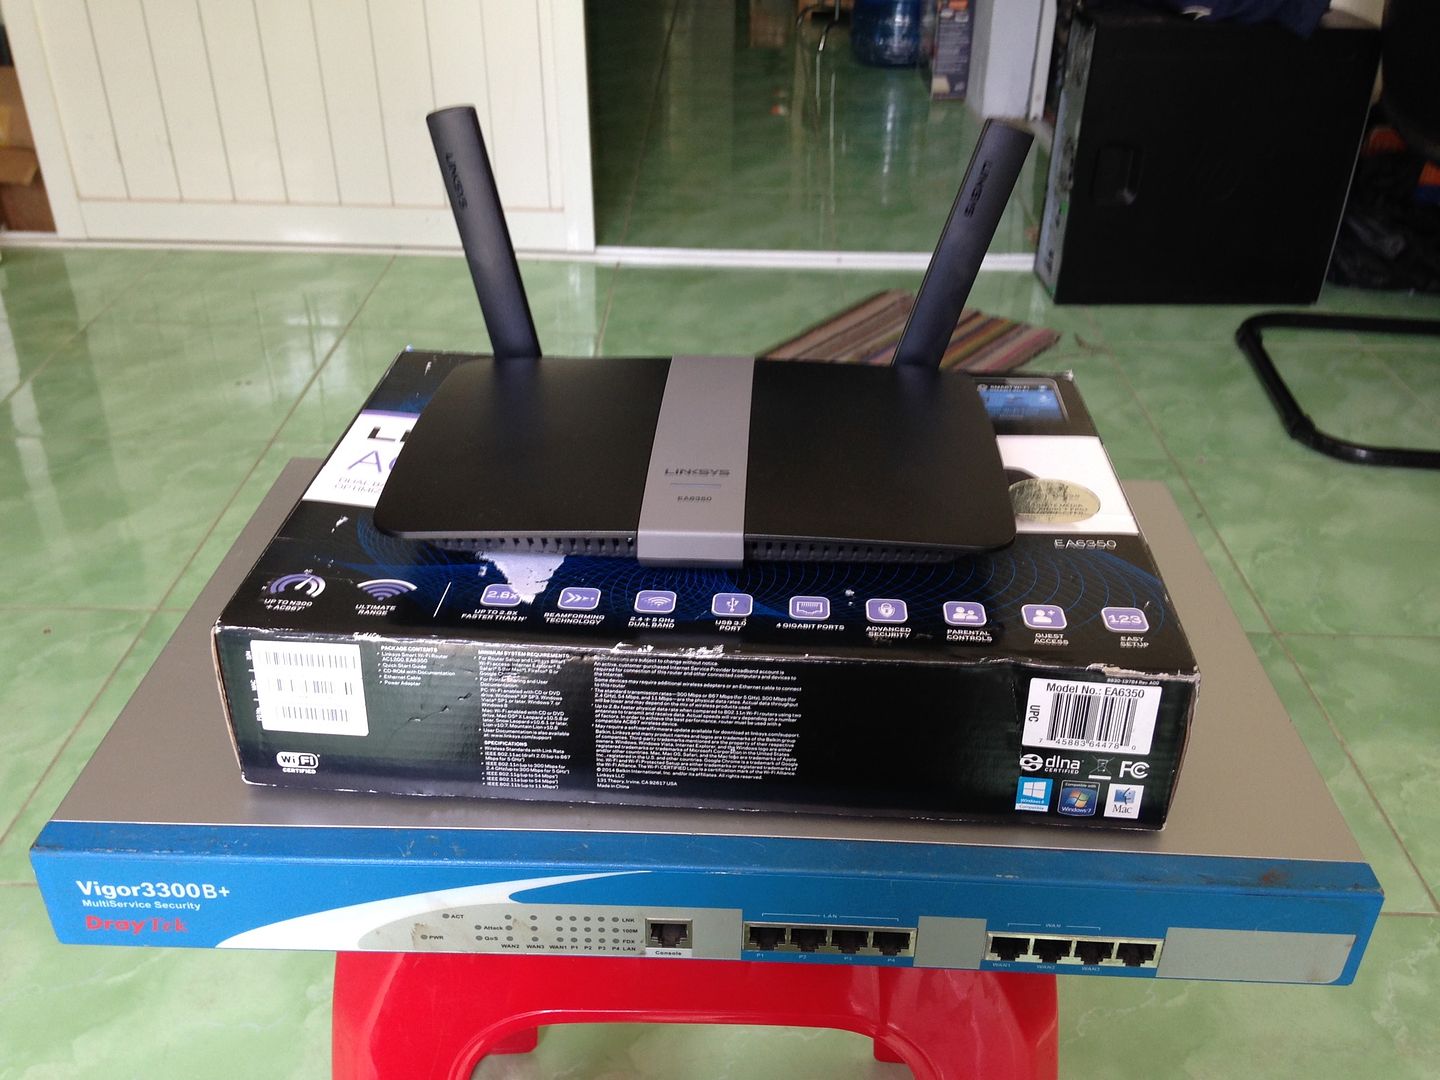 Router wifi Linksys EA6350 và router draytek vigor 3300B+ thanh lý giá cực rẻ